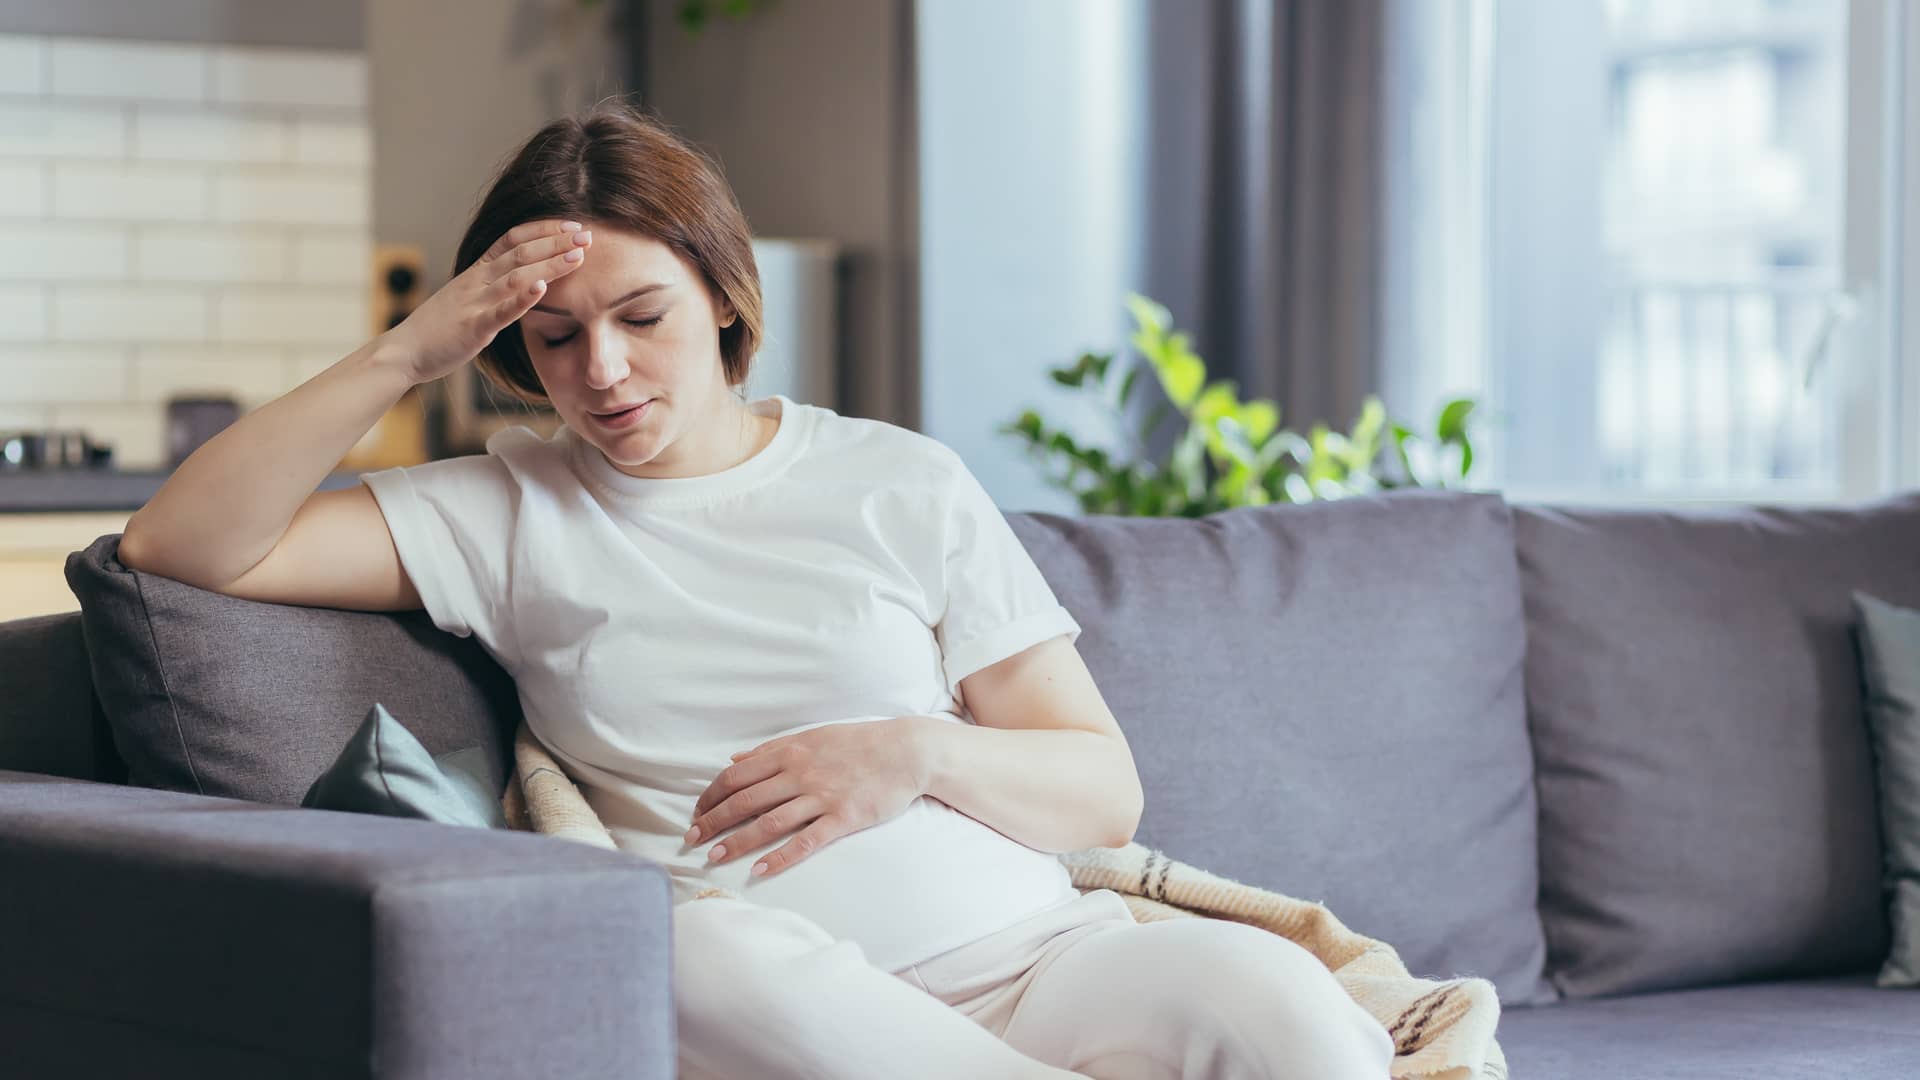 20 semanas embarazo: ecografía morfológica para descartar malformaciones